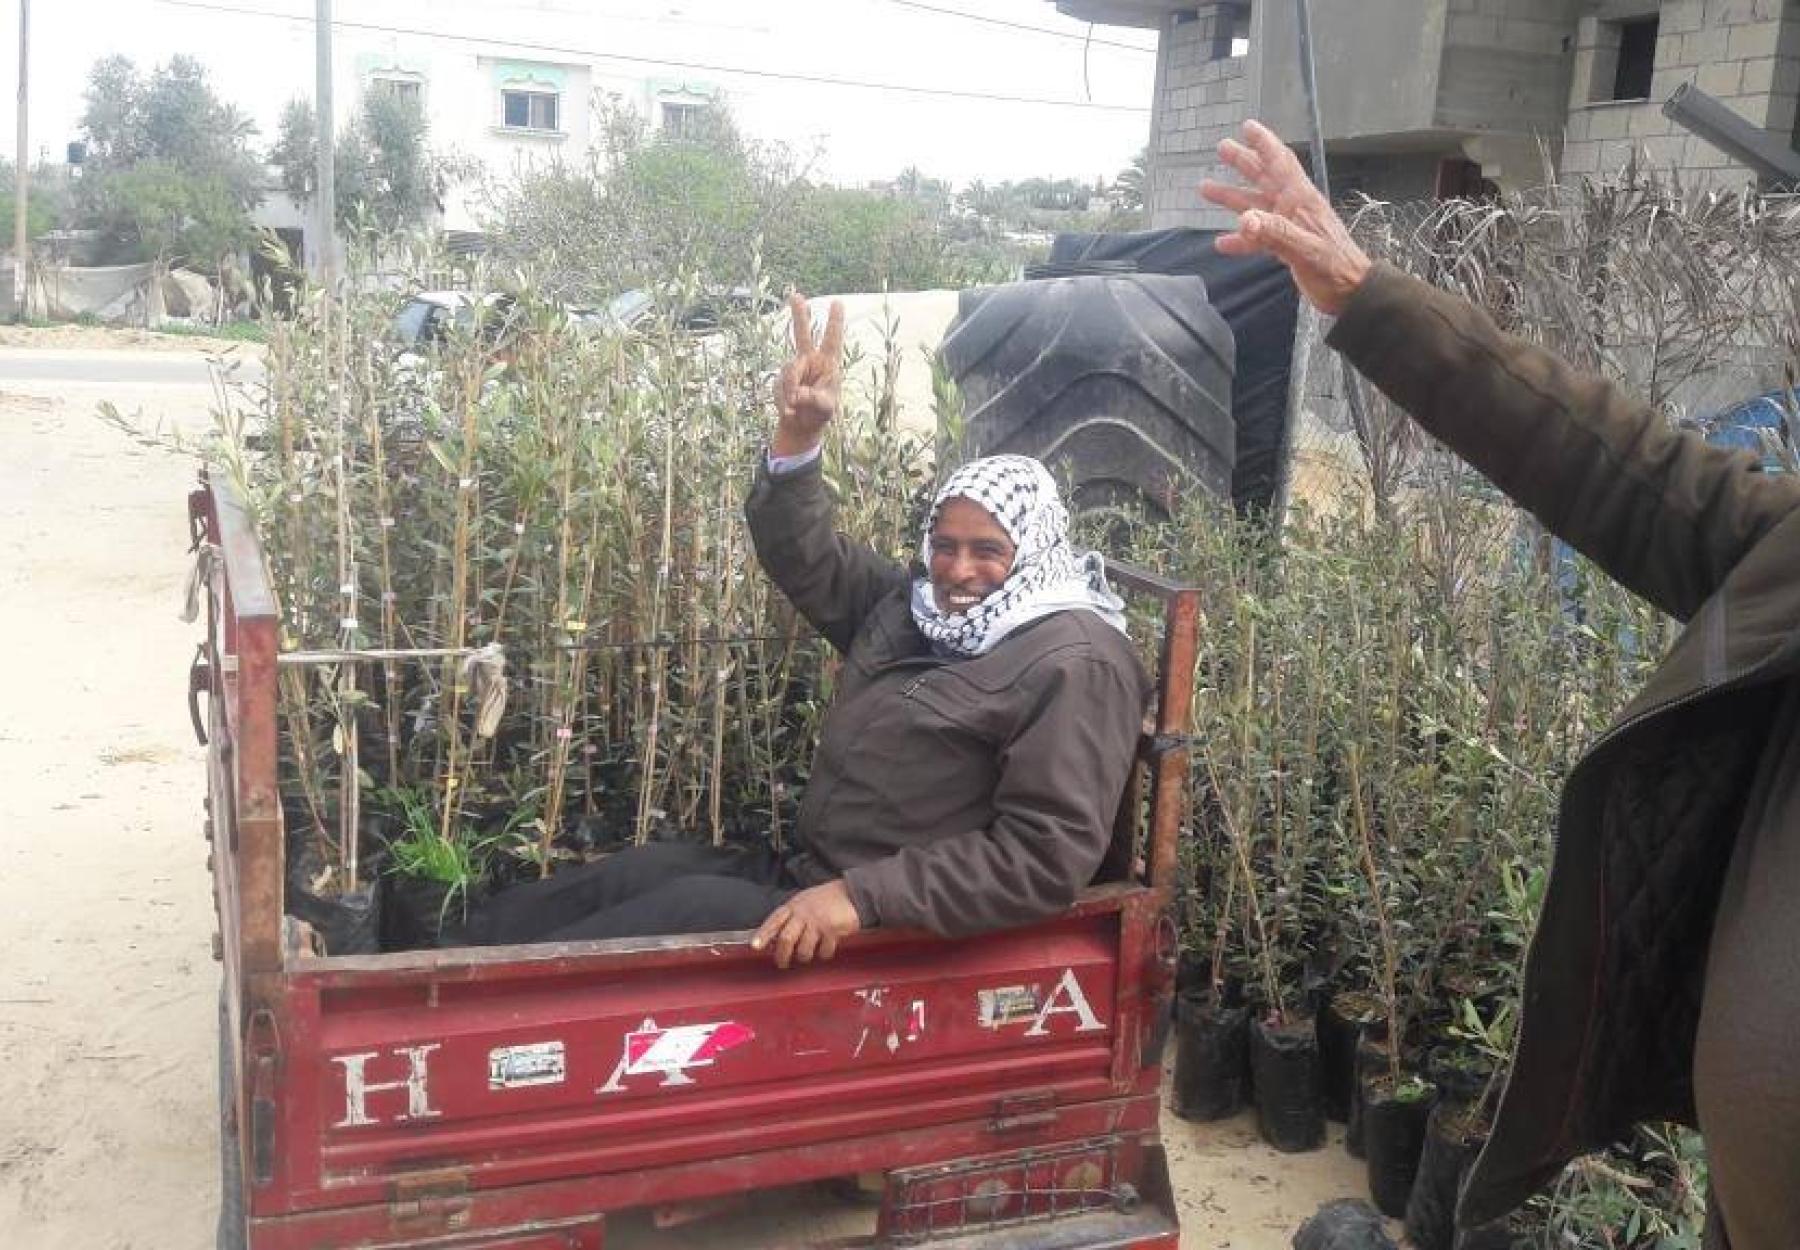 المليون شجرة يزرع آلاف الأشجار في قطاع غزة  دعما لصمود المزارعين